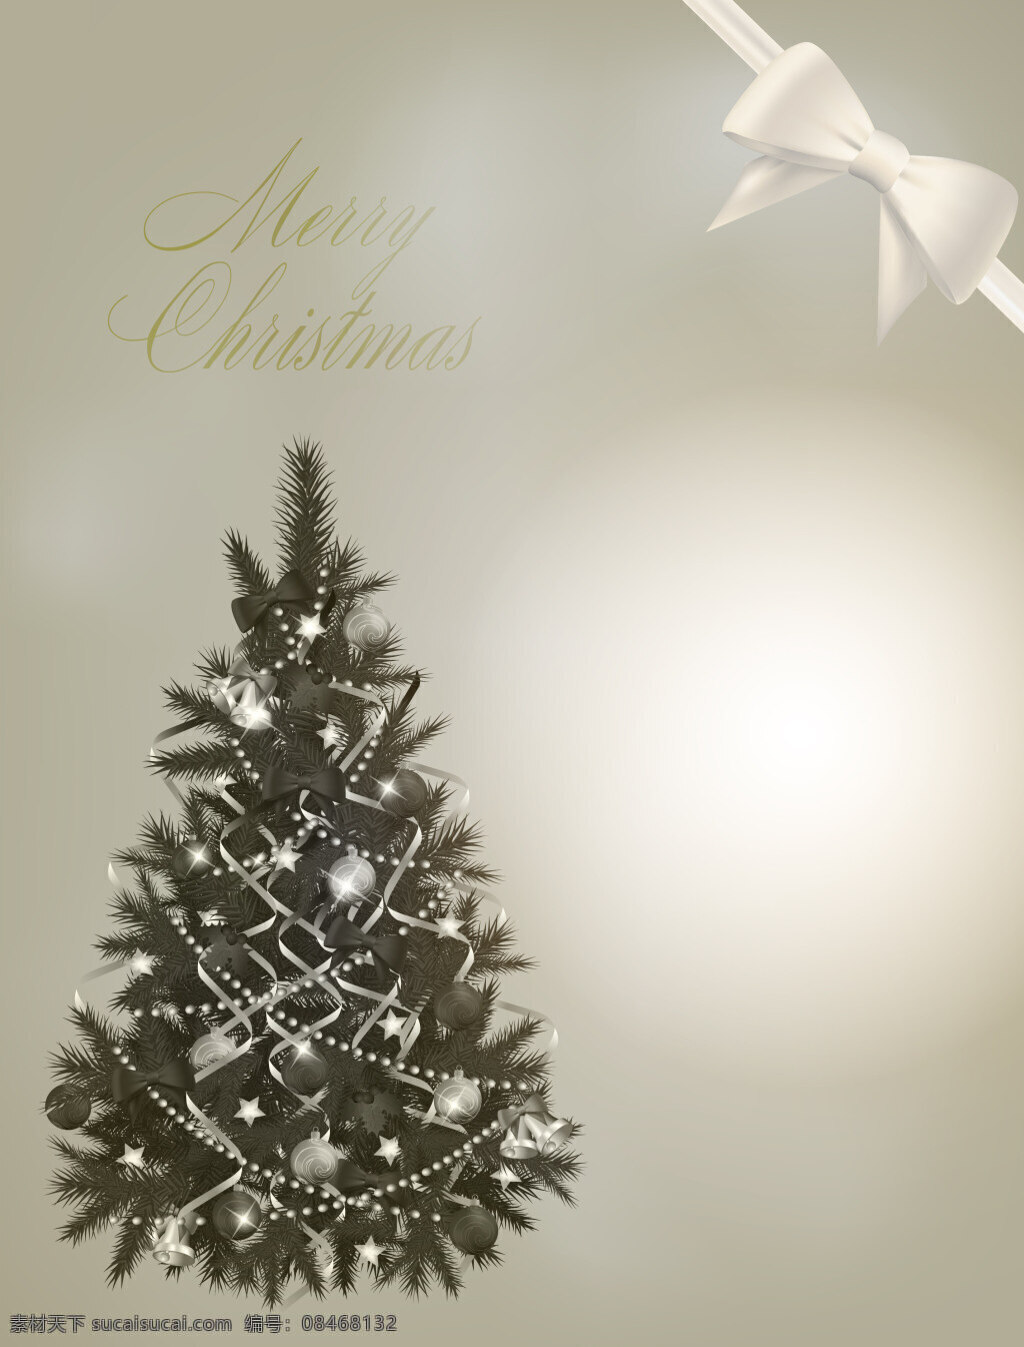 矢量 金色 圣诞节 背景 淡金色 圣诞树 蝴蝶结 丝带 海报